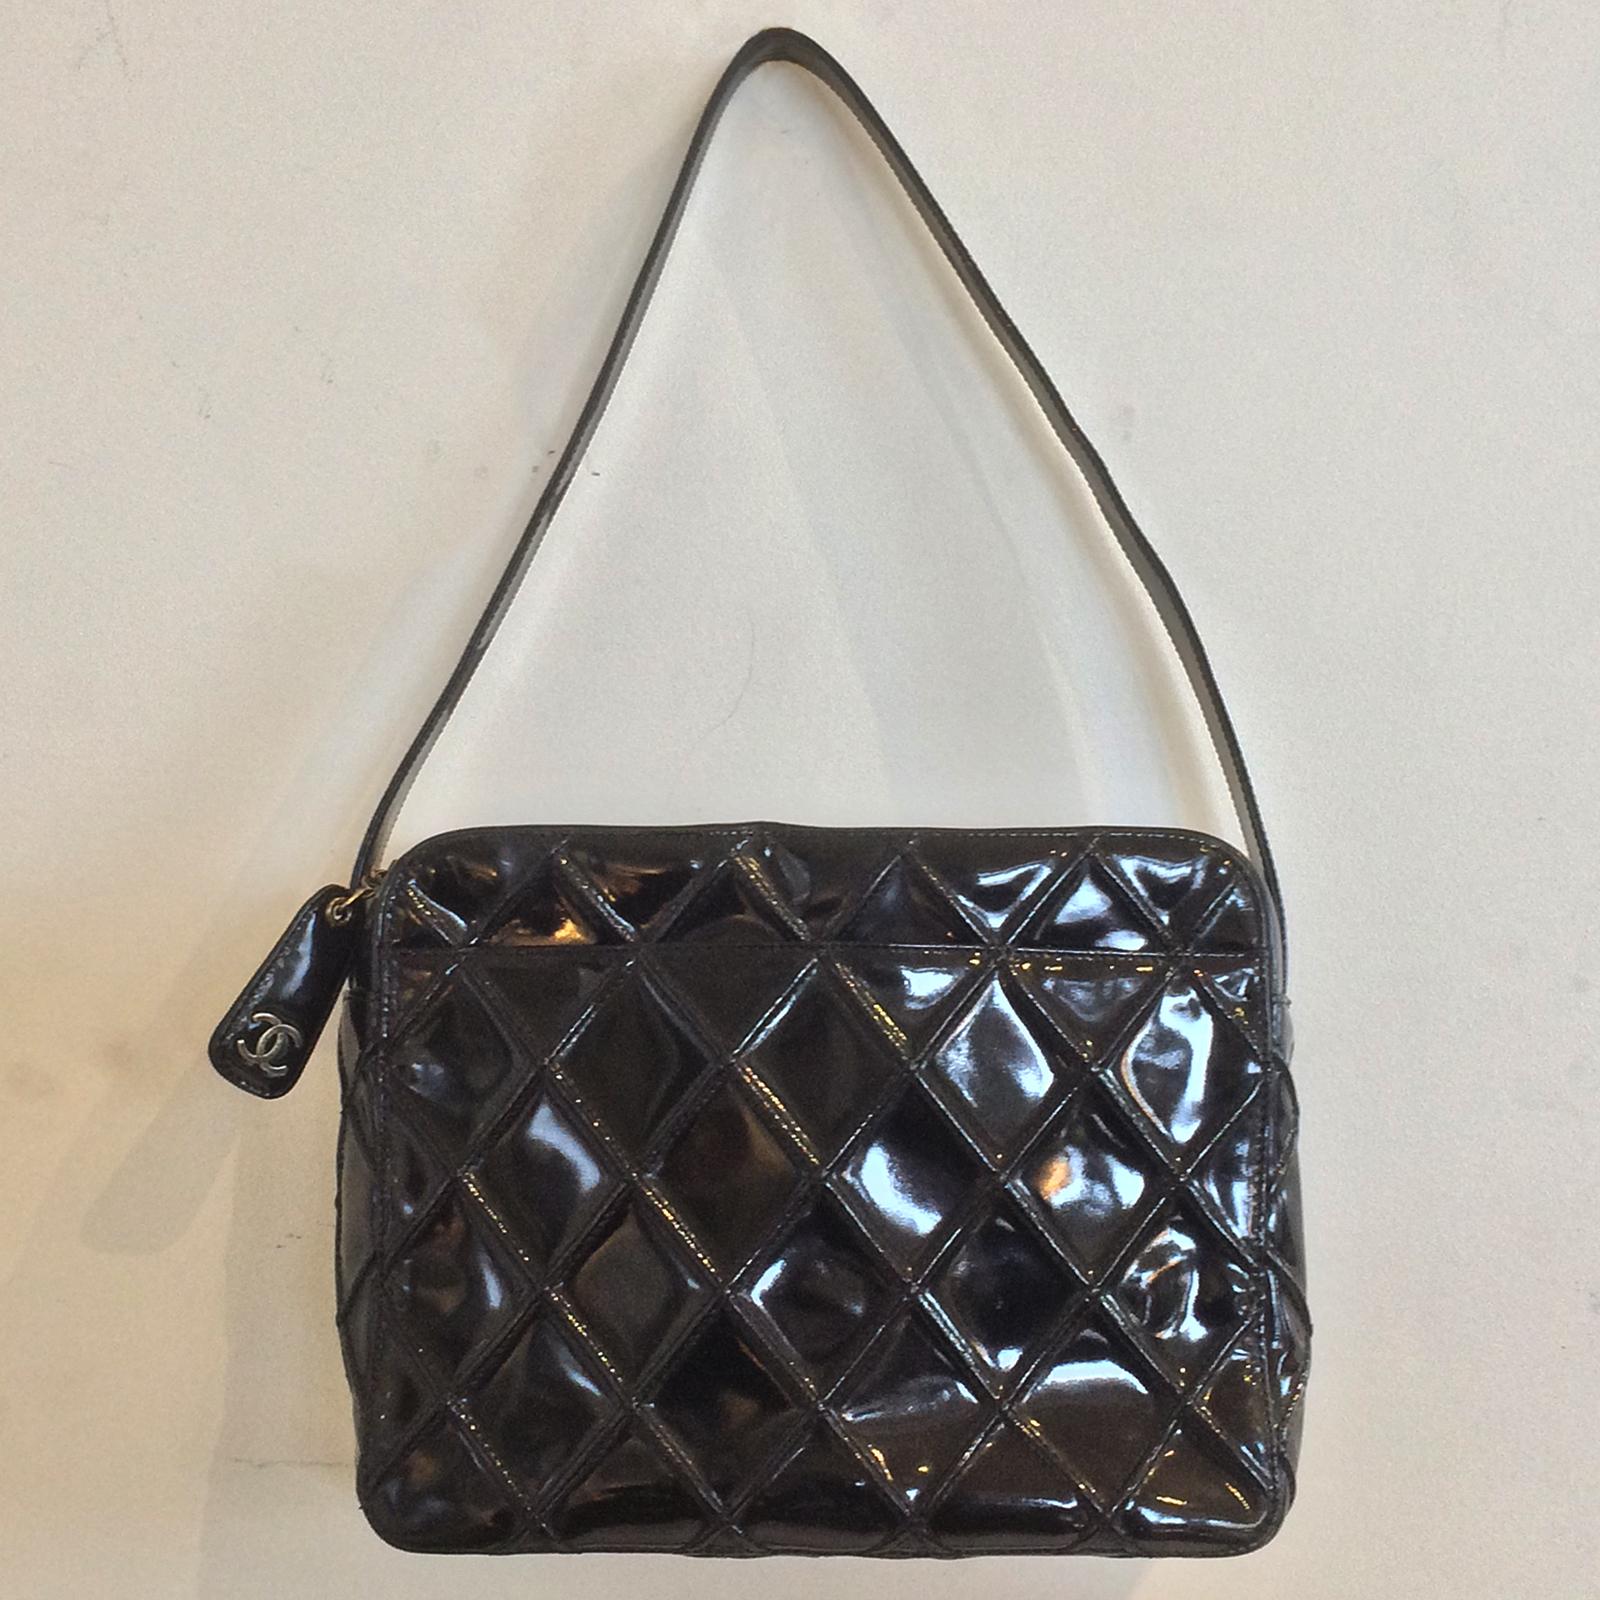 Women's Chanel Vintage Black Enamel Patent Leather Shoulder bag handbag